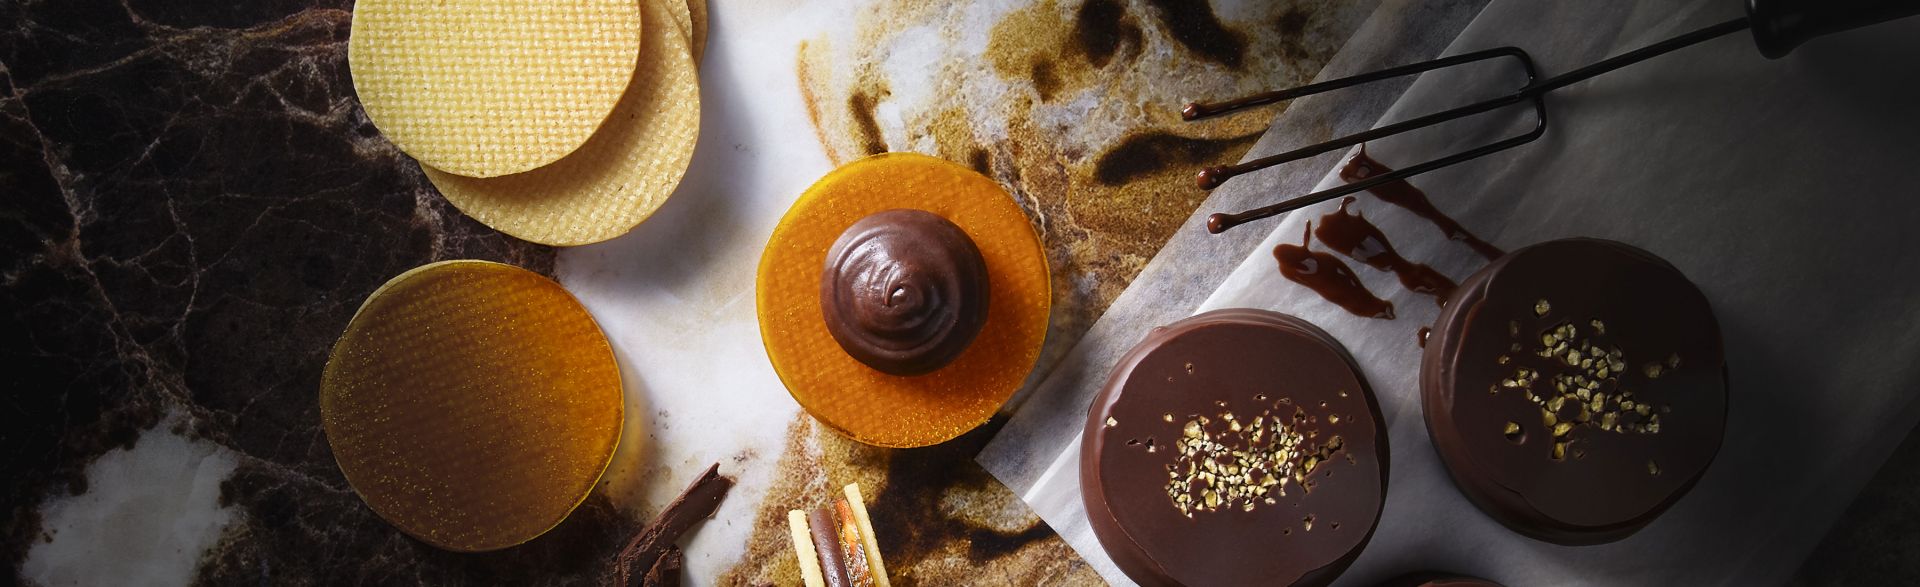 Čokoládové sušenky s marakujou a mangem